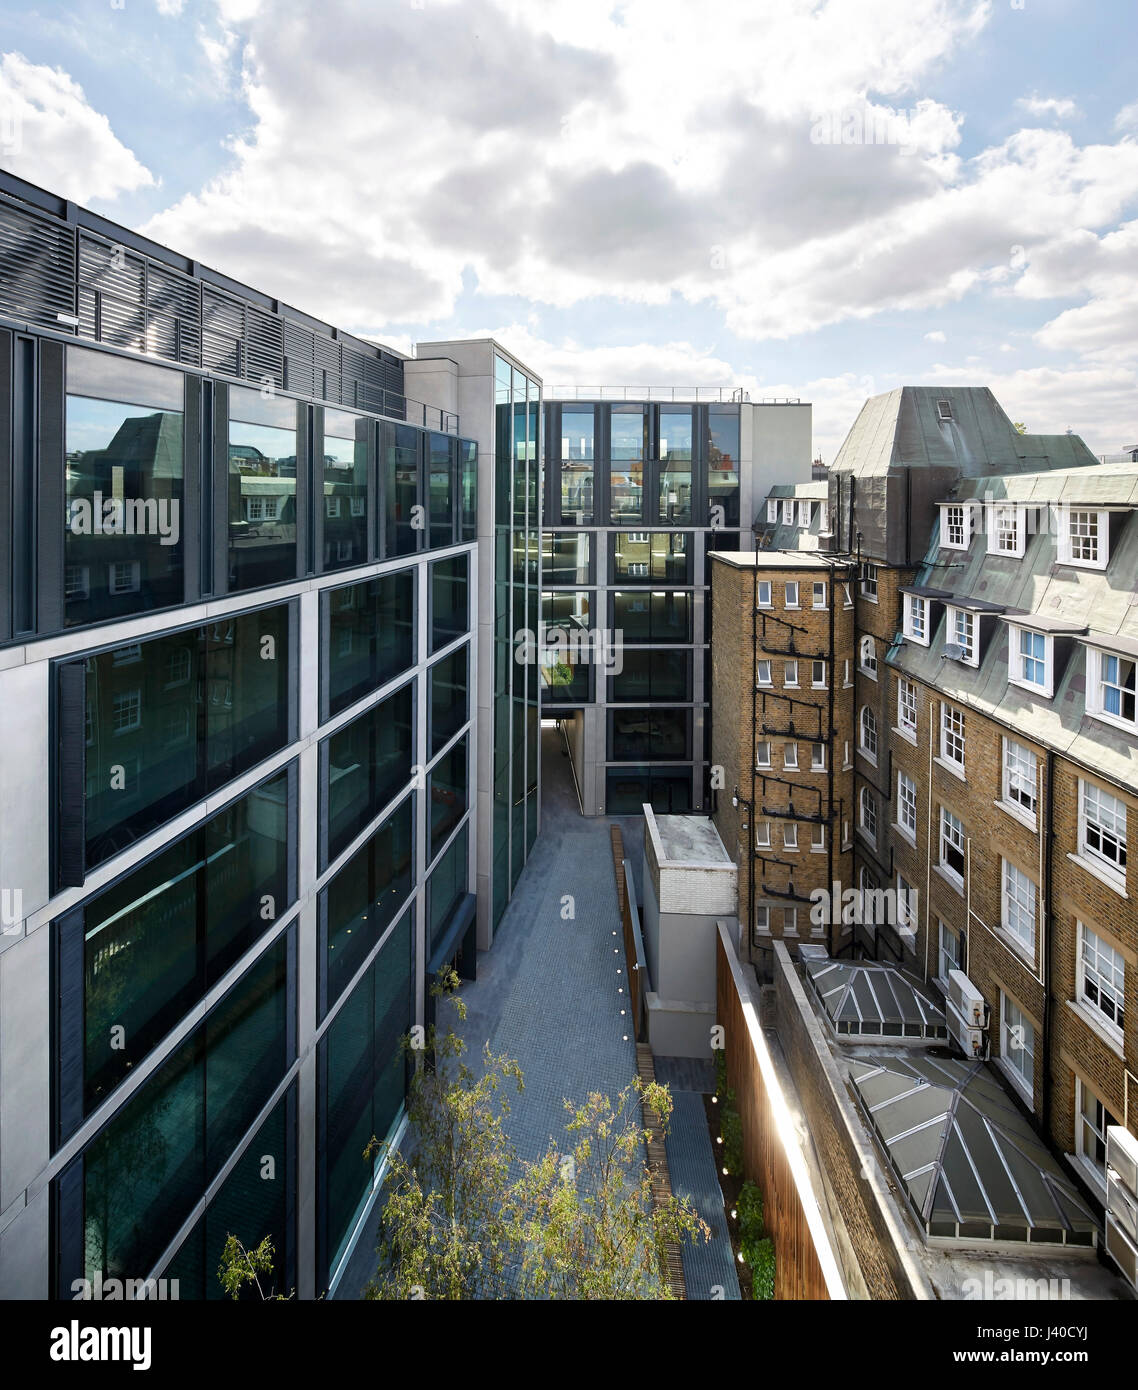 Erhöhten Blick von Osten in den begrünten Innenhof. Chancery Lane, London, Vereinigtes Königreich. Architekt: Bennetts Associates Architects, 2015. Stockfoto